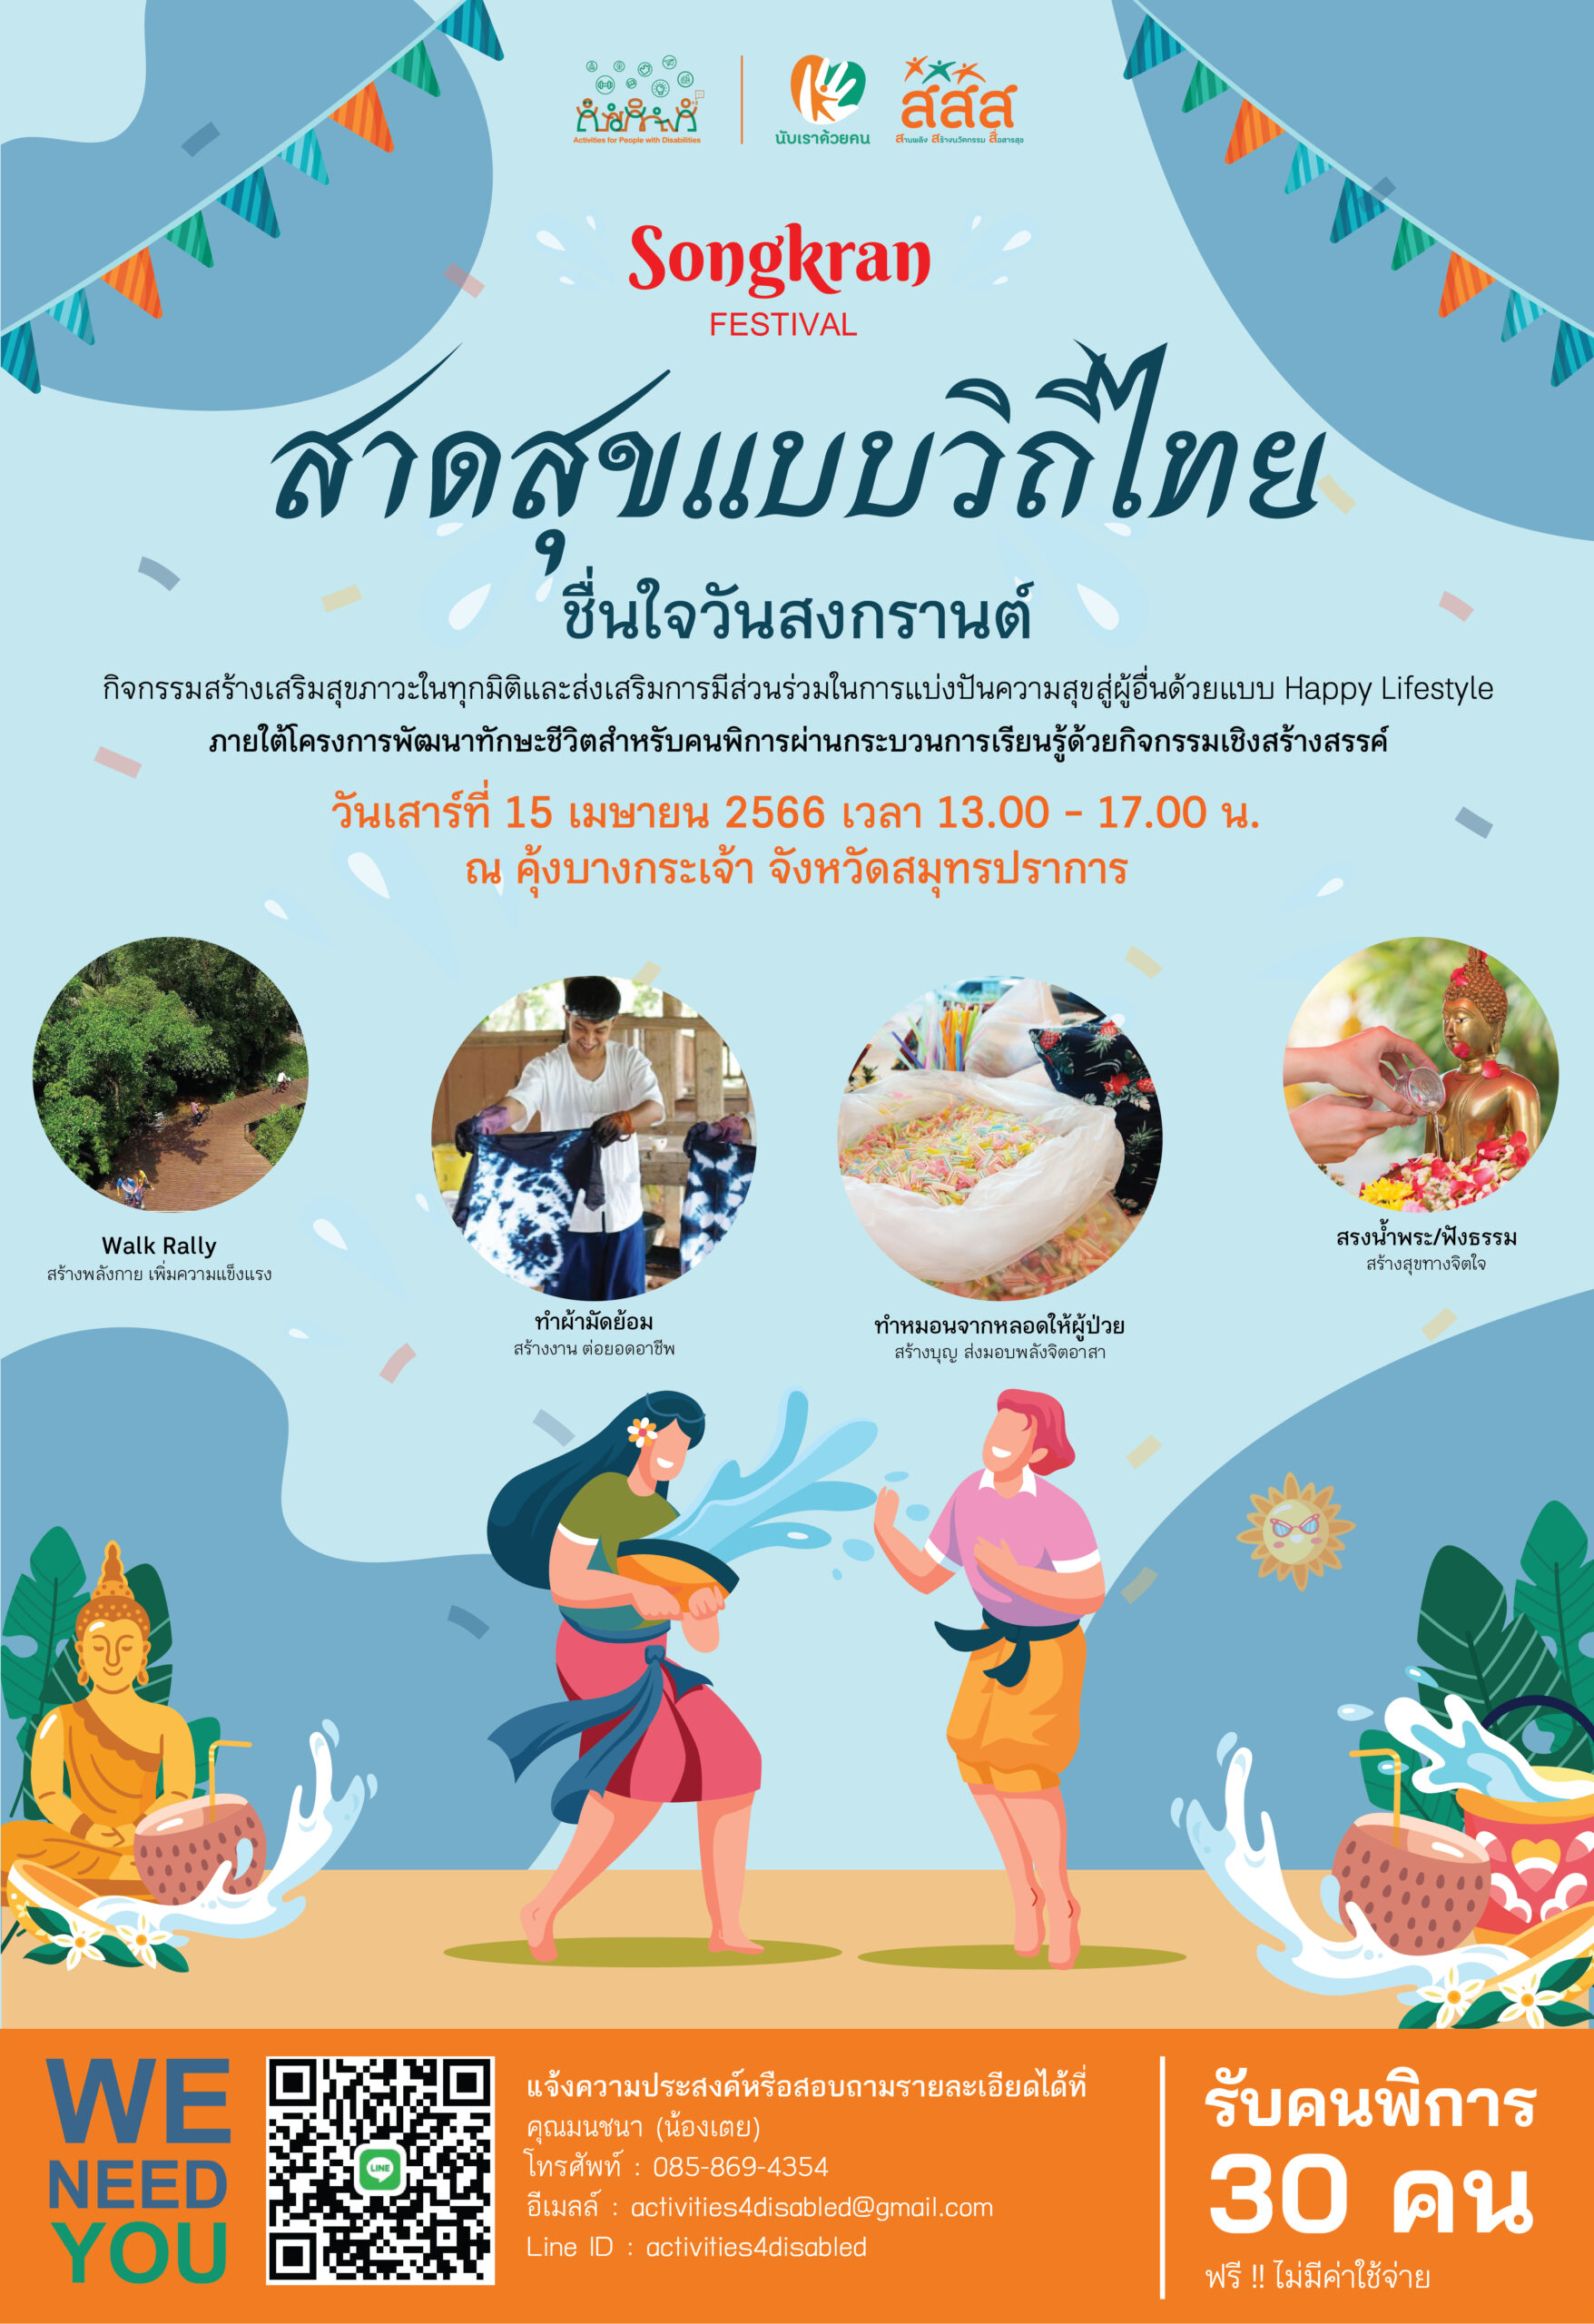 ขอเชิญชวนคนพิการทุกท่าน ร่วมกิจกรรม “Songkran Festival : สาดสุขแบบวิถีไทย ชื่นใจวันสงกรานต์”